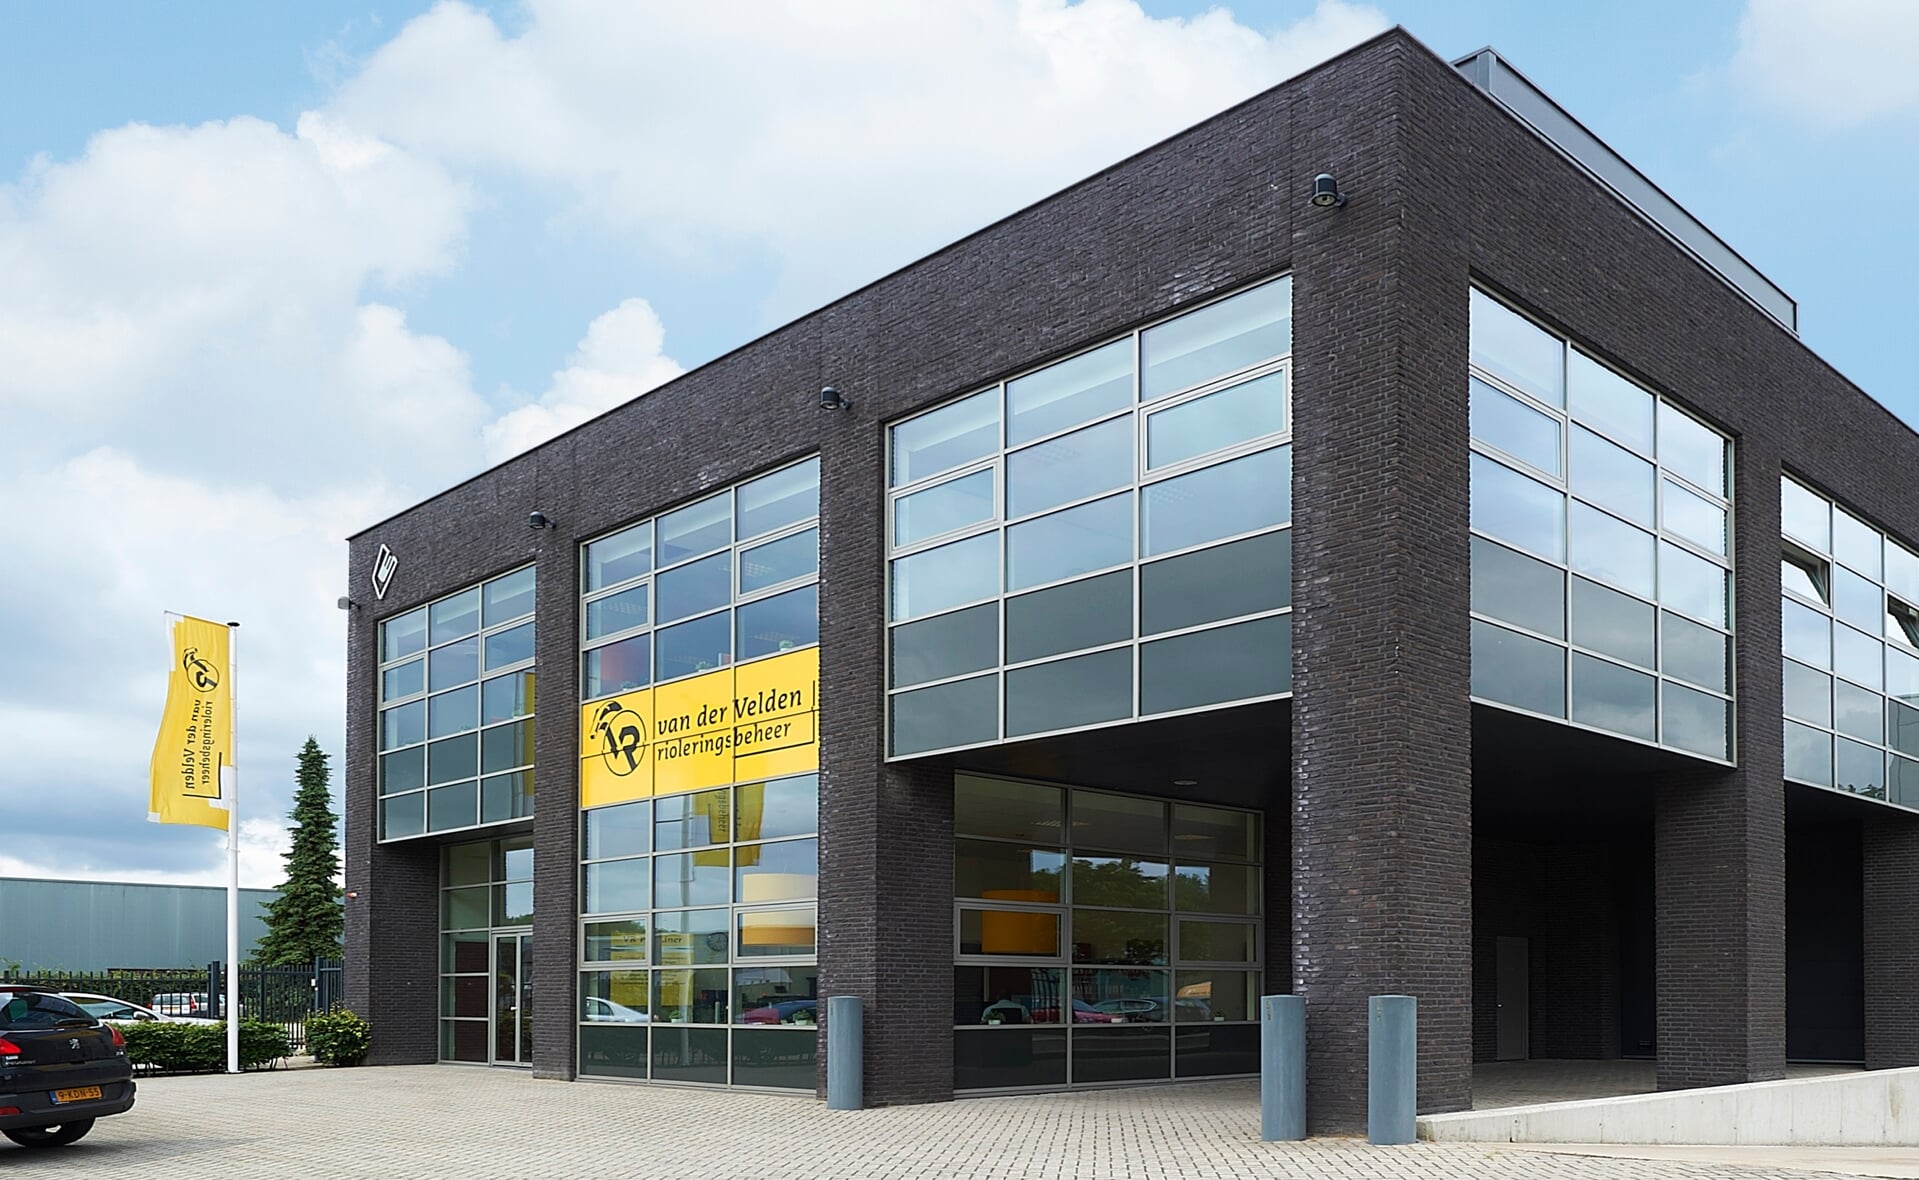 Van der Velden Rioleringsbeheer verhuist naar Den Bosch. Het Boxtelse familiebedrijf aan de Schouwrooij kon geen nieuwe locatie vinden op bedrijventerrein Ladonk. Ook het hoofdkantoor op de Kastanjelaan gaat naar de Brabantse hoofdstad.